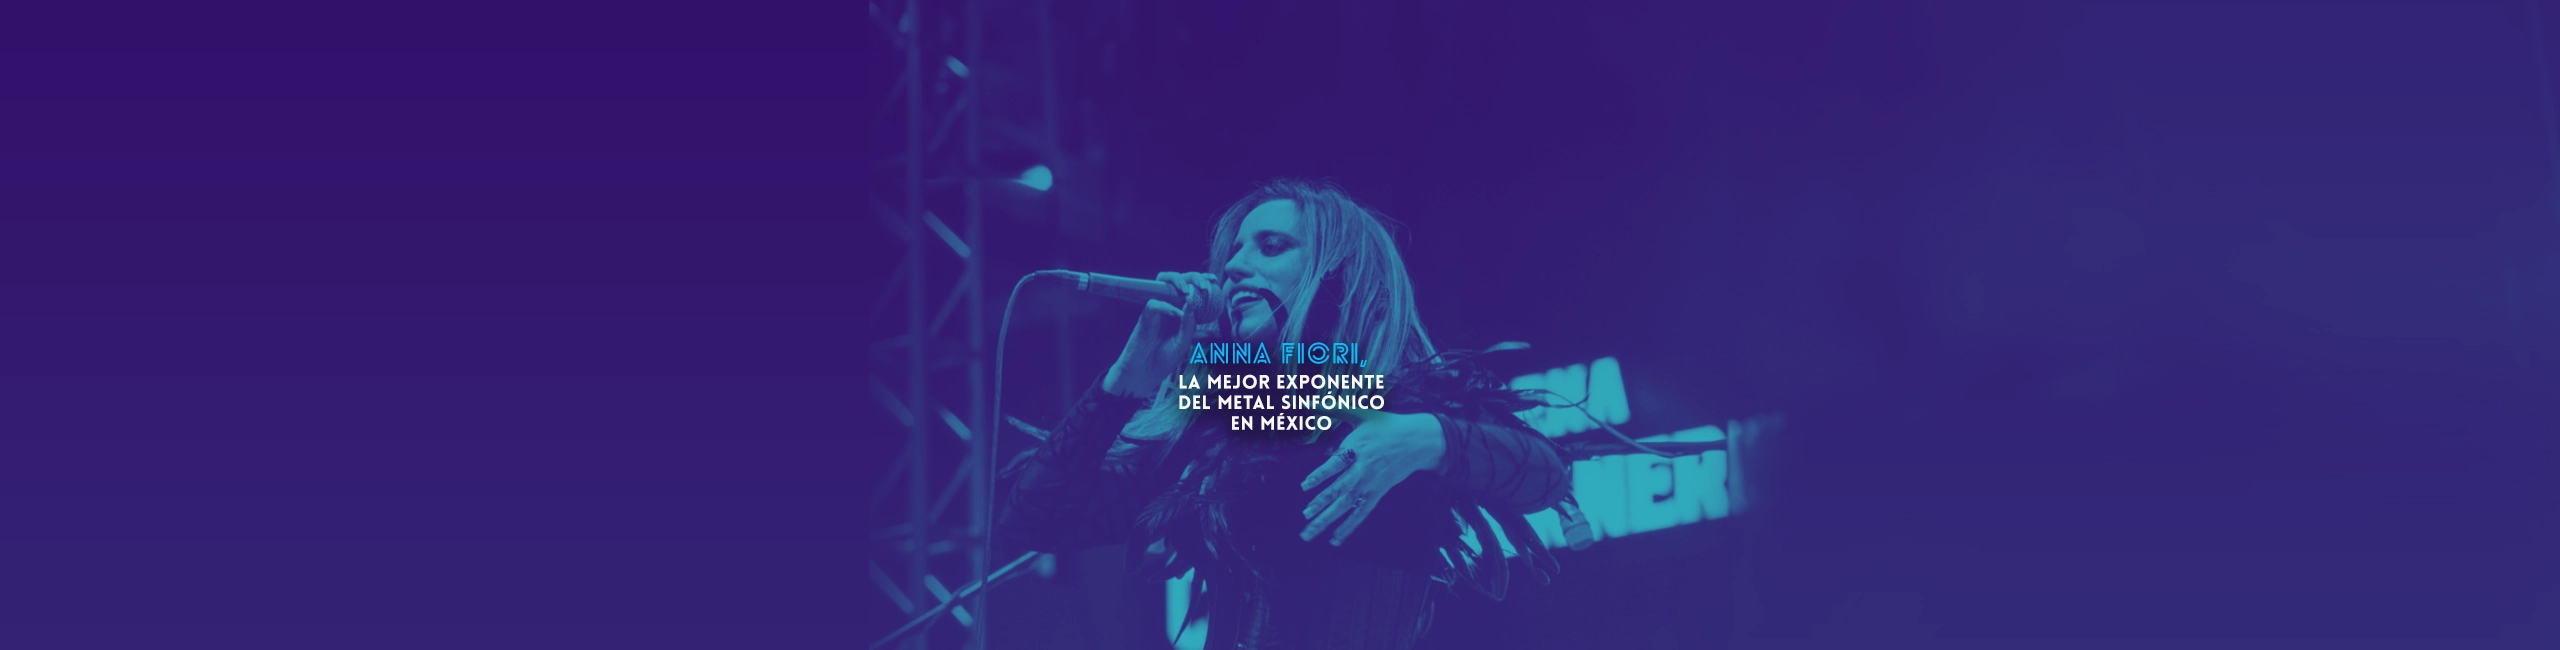 Anna Fiori, la mejor exponente del metal sinfónico en México